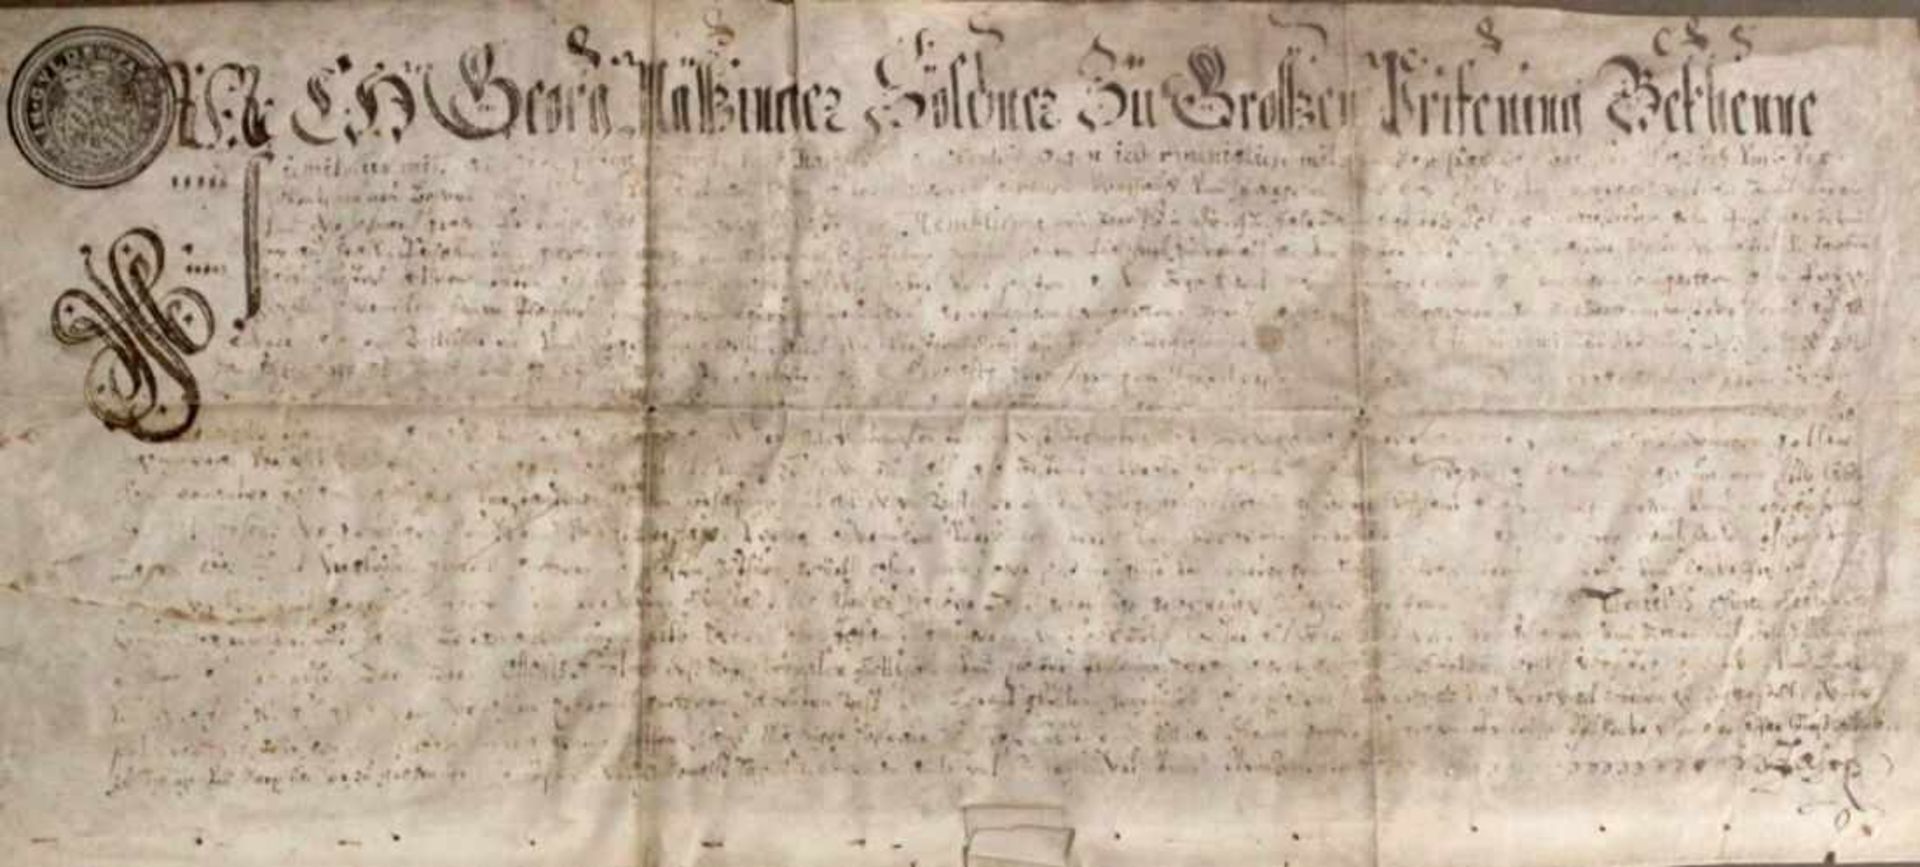 Urkunde - Regensburg / Prüfening 18.Jahrhundert handschriftlich: "Gebäudeübergabe von Georg